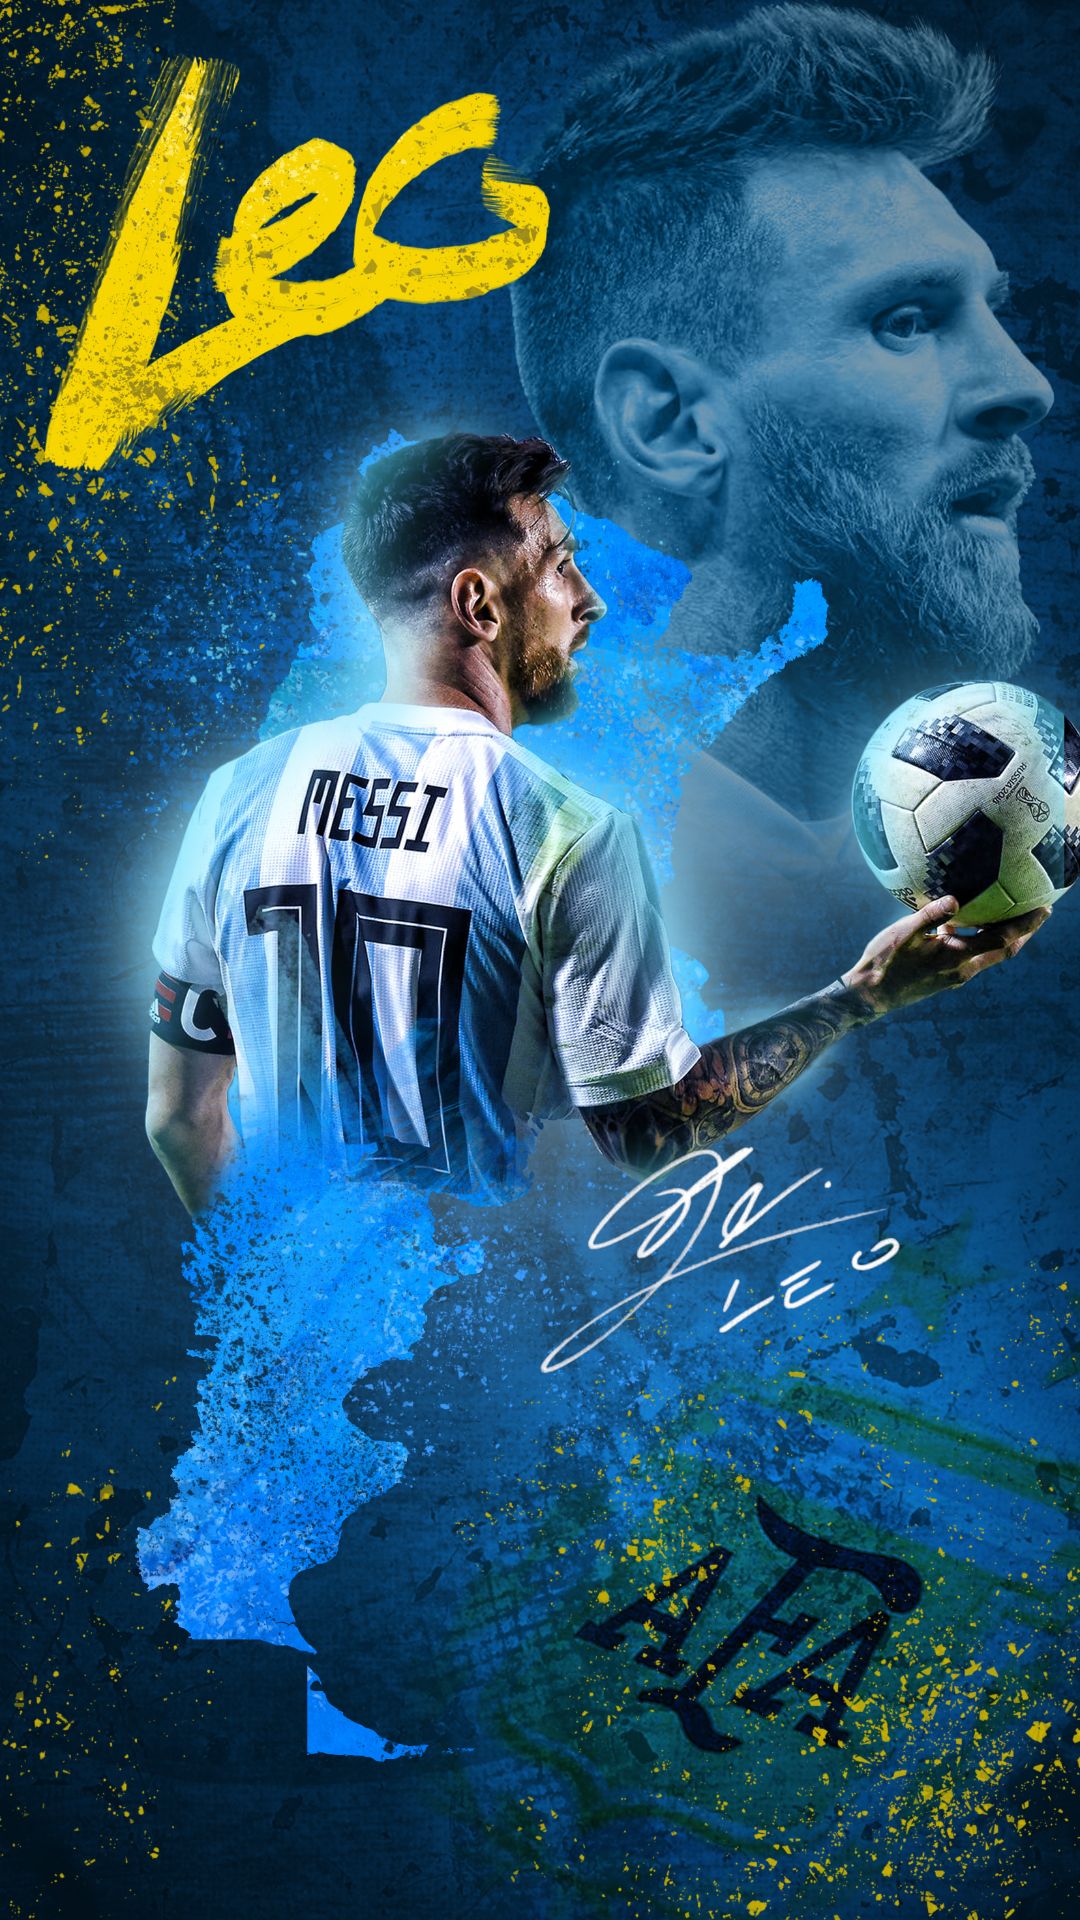 Hình nền Messi 4k đẹp lung linh, thể hiện rõ sự tài năng của ngôi sao bóng đá nổi tiếng này. Cùng chiêm ngưỡng hình ảnh chất lượng cao này và truyền cảm hứng từ Messi đến bạn.